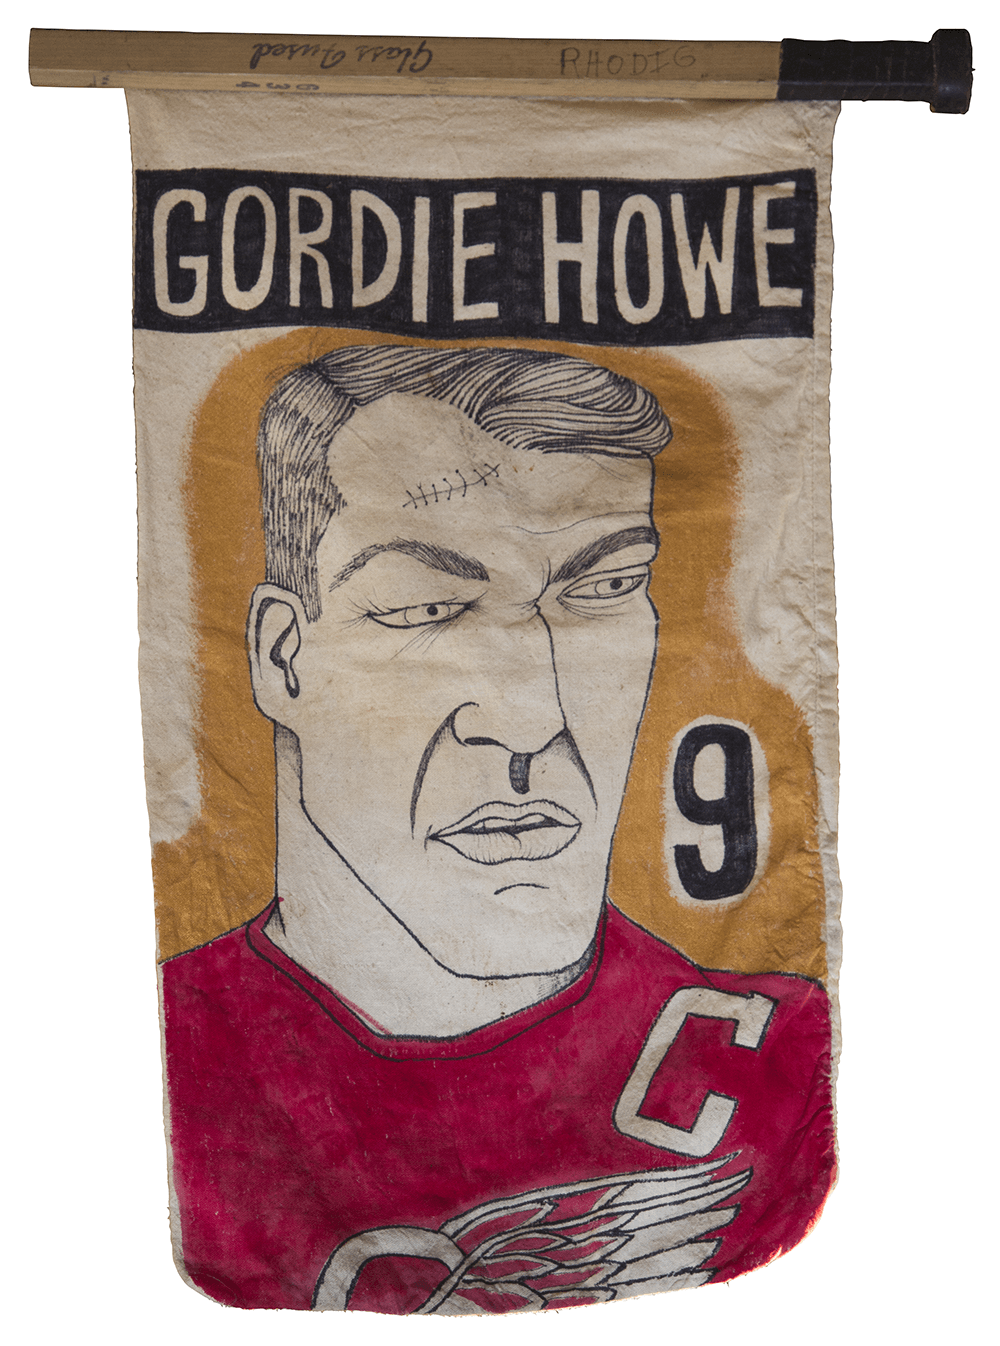 Olympia Stadium: Gordie Howe